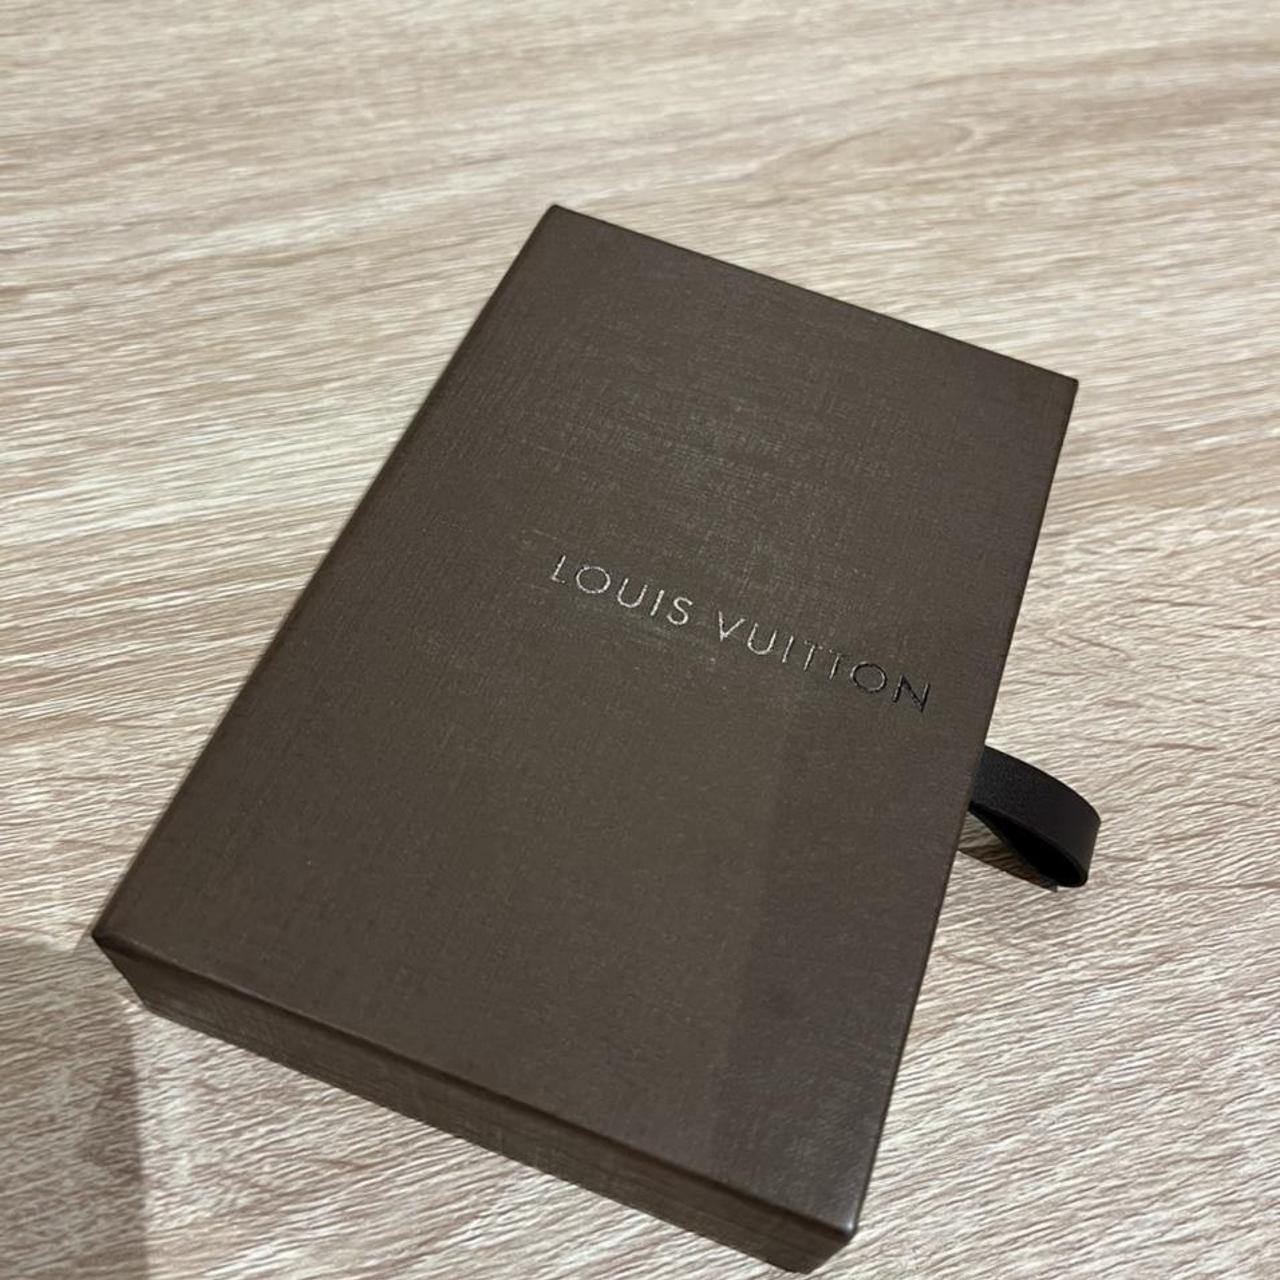 LOUIS VUITTON Epi Leather Card - Depop